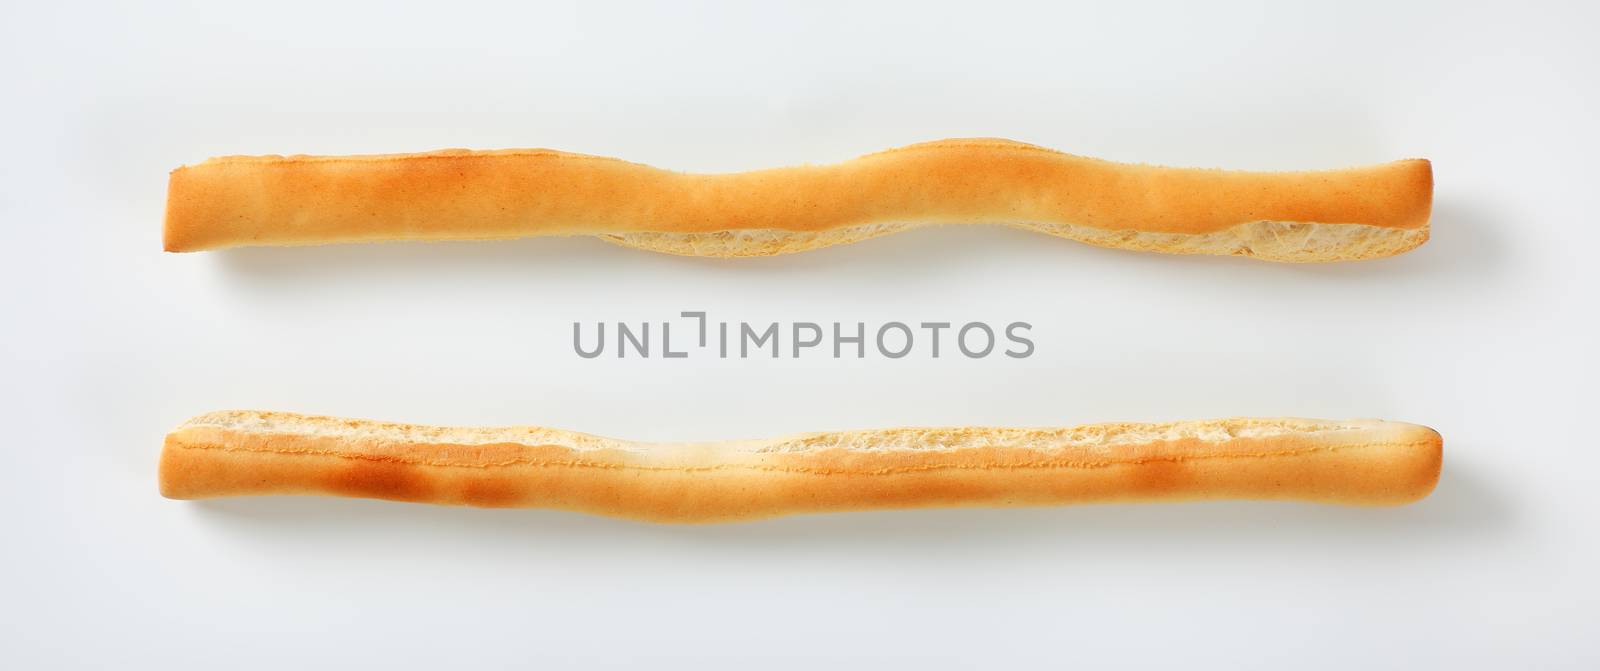 crispy bread sticks by Digifoodstock